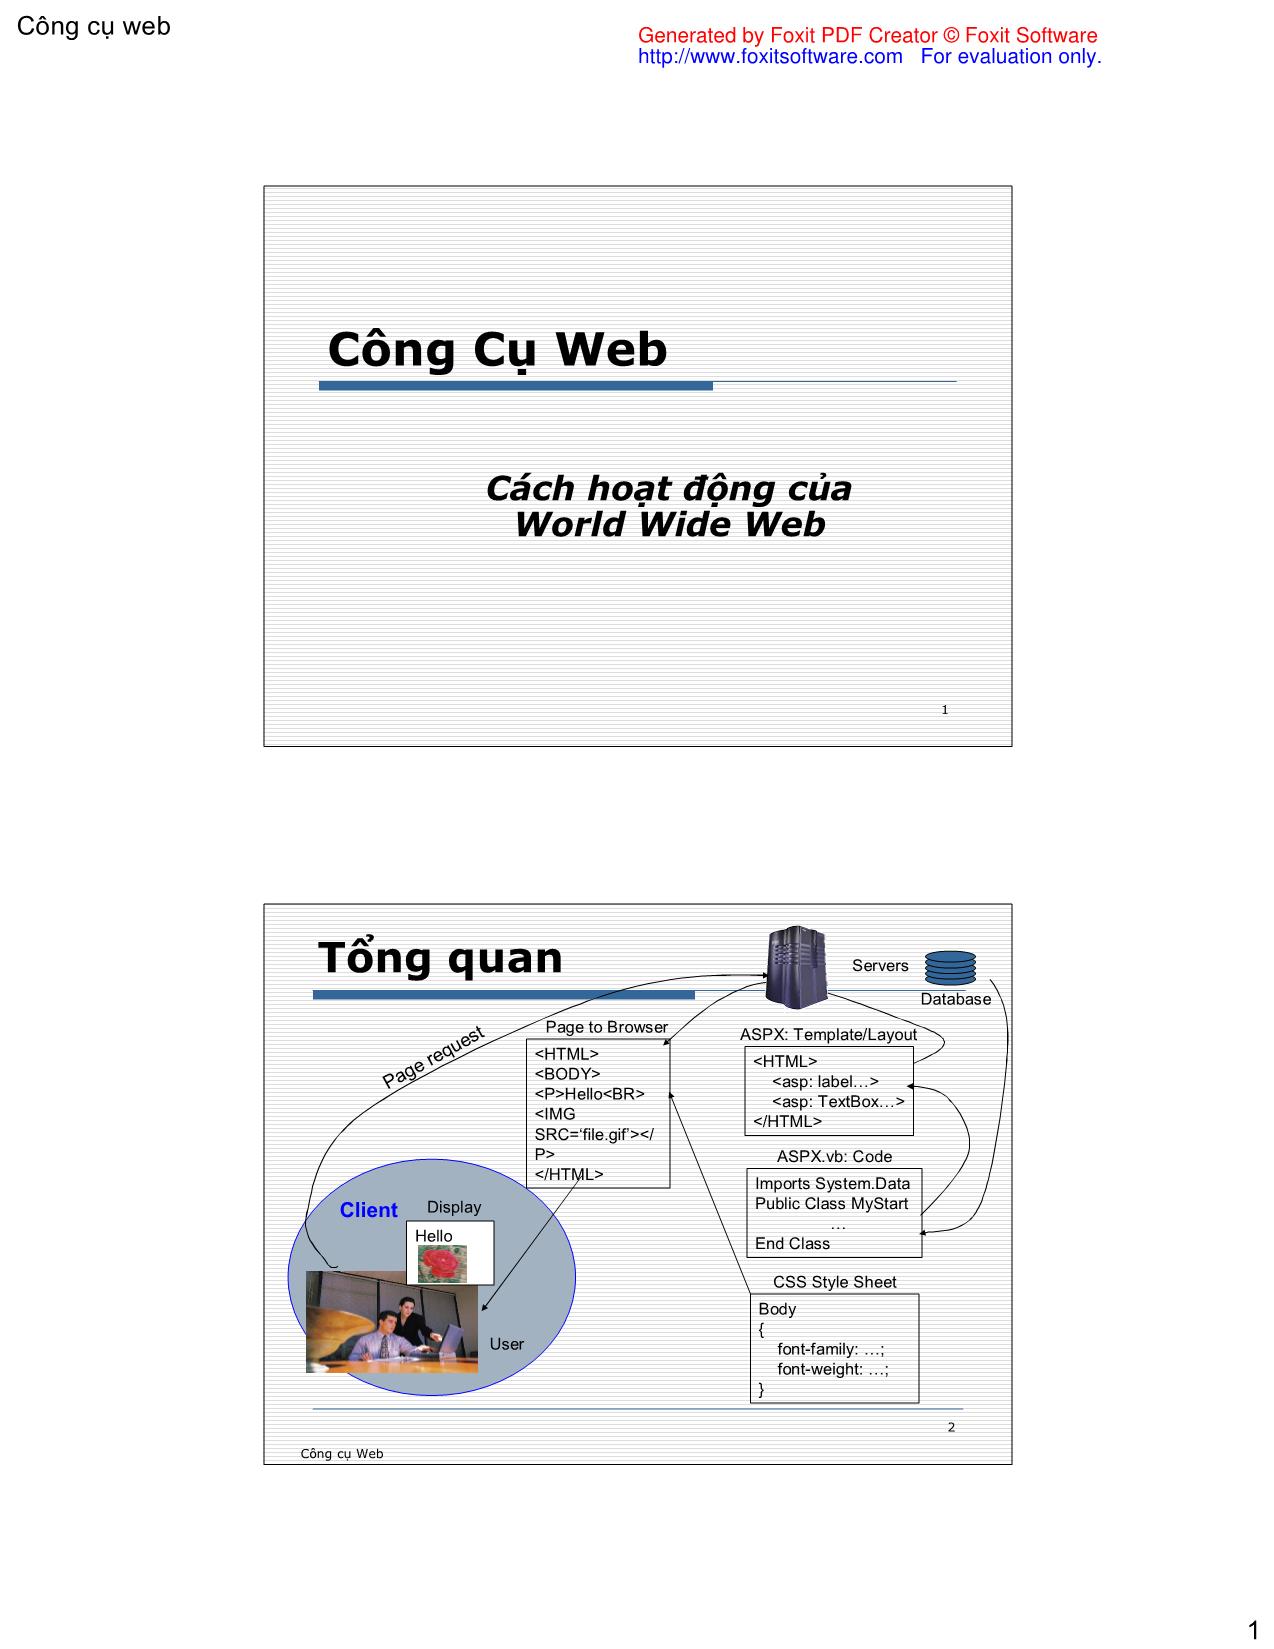 Cách hoạt động của World Wide Web trang 1